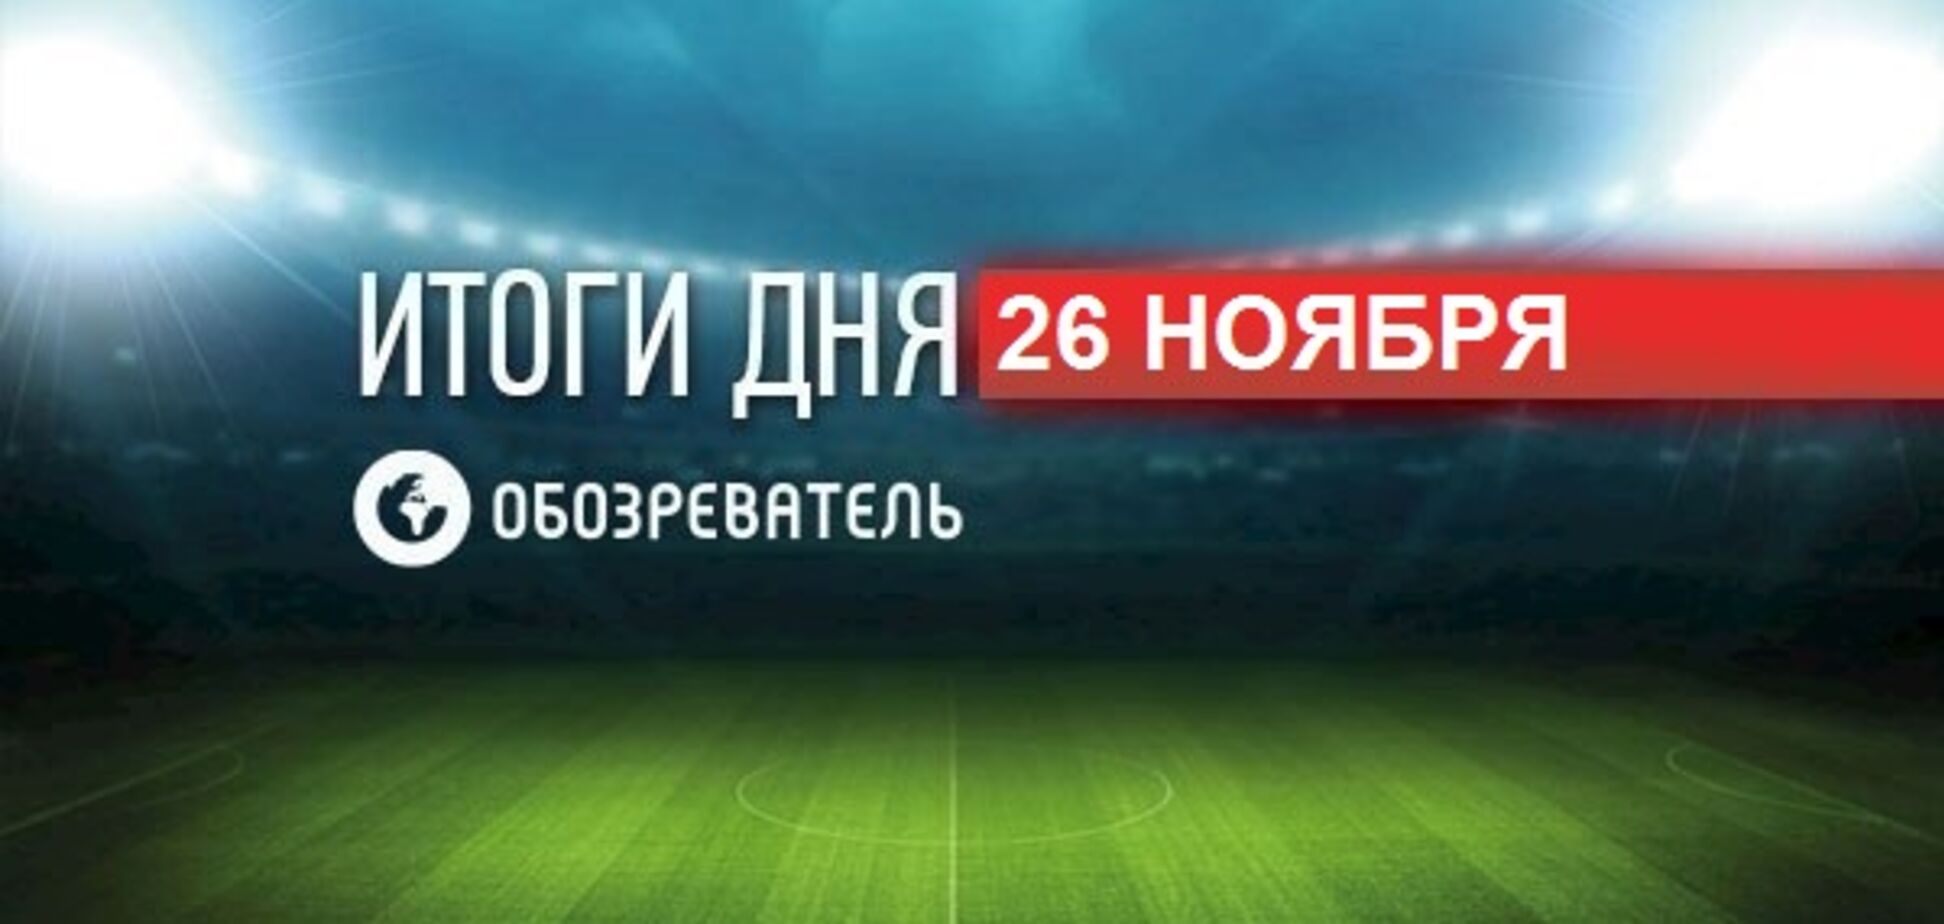 Збірну Росії з футболу звинуватили у застосуванні допінгу: спортивні підсумки 26 листопада